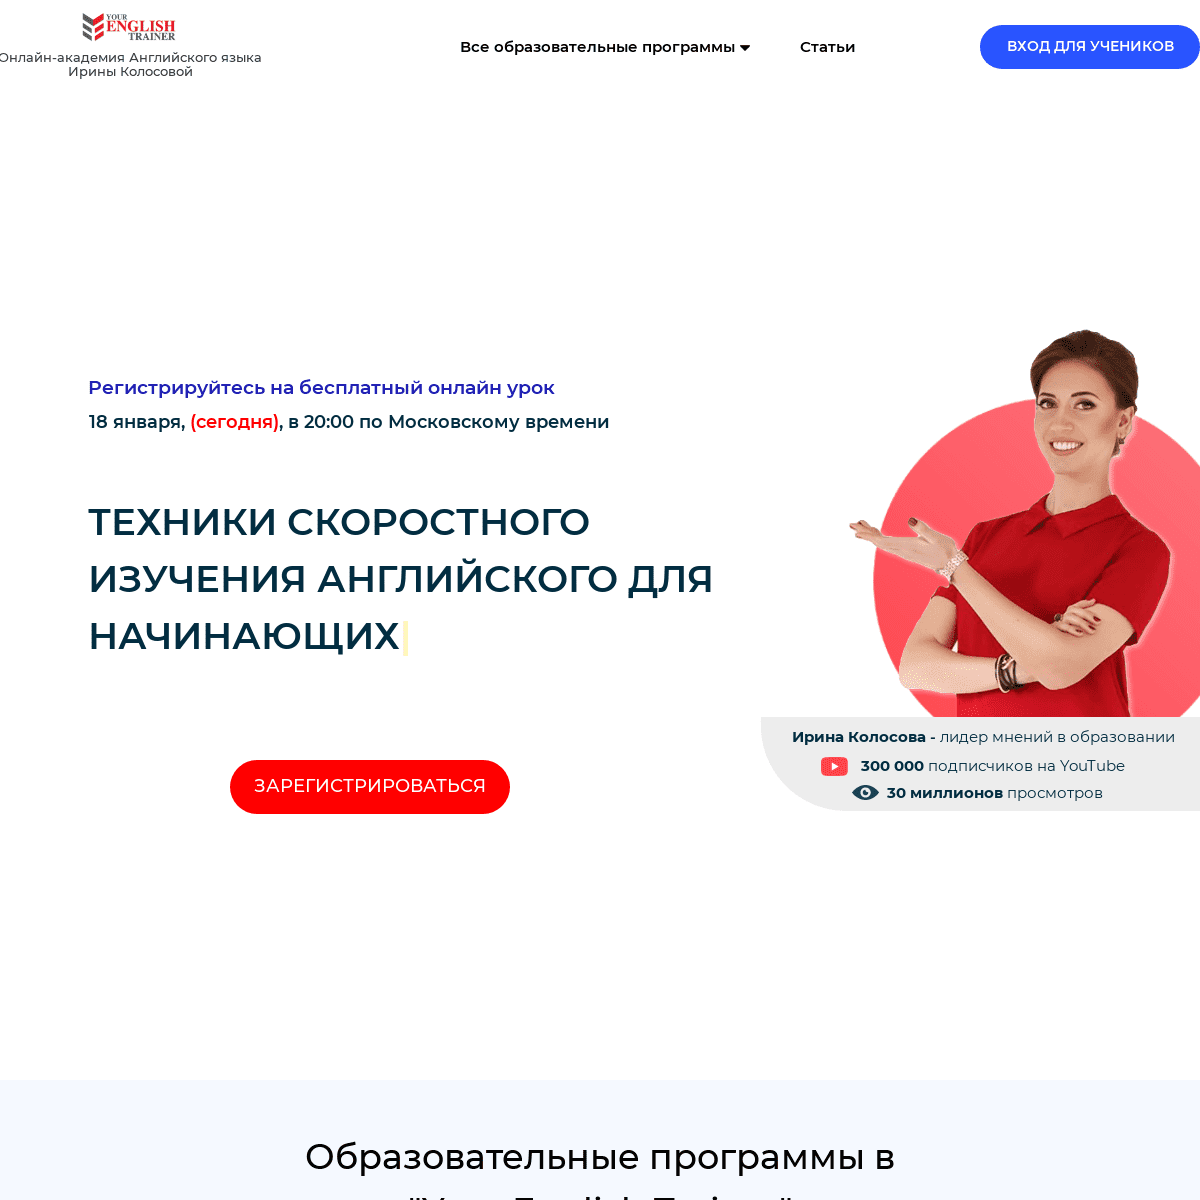 A complete backup of irina-kolosova.com